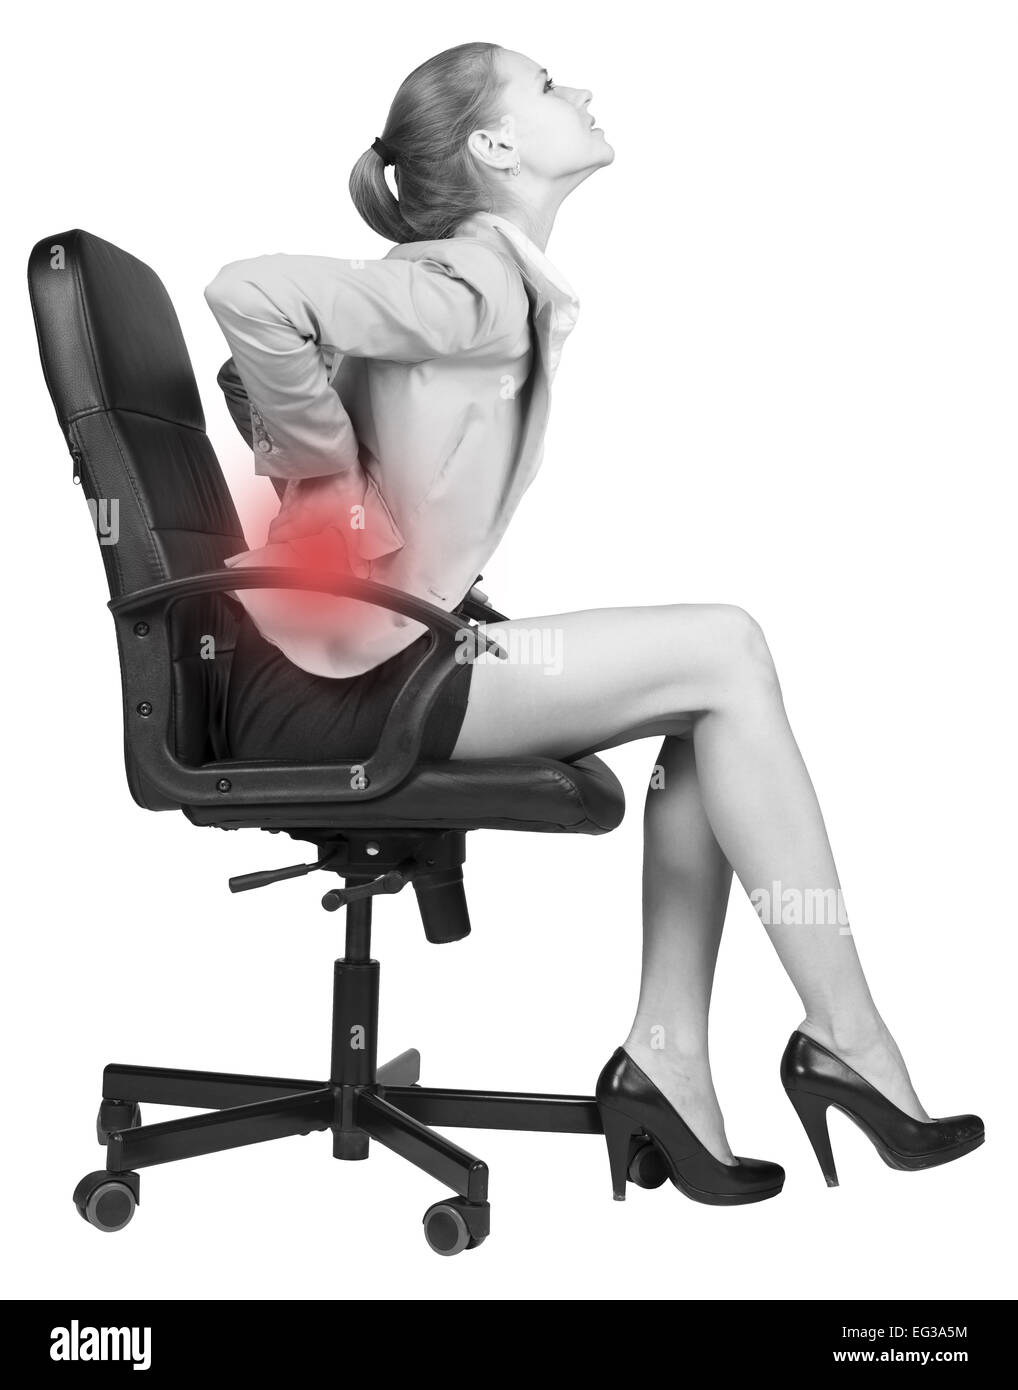 После длительного сидения. Человек в компьютерном кресле. Стул для больных позвоночником. Неудобный офисный стул. Женщина на стуле.